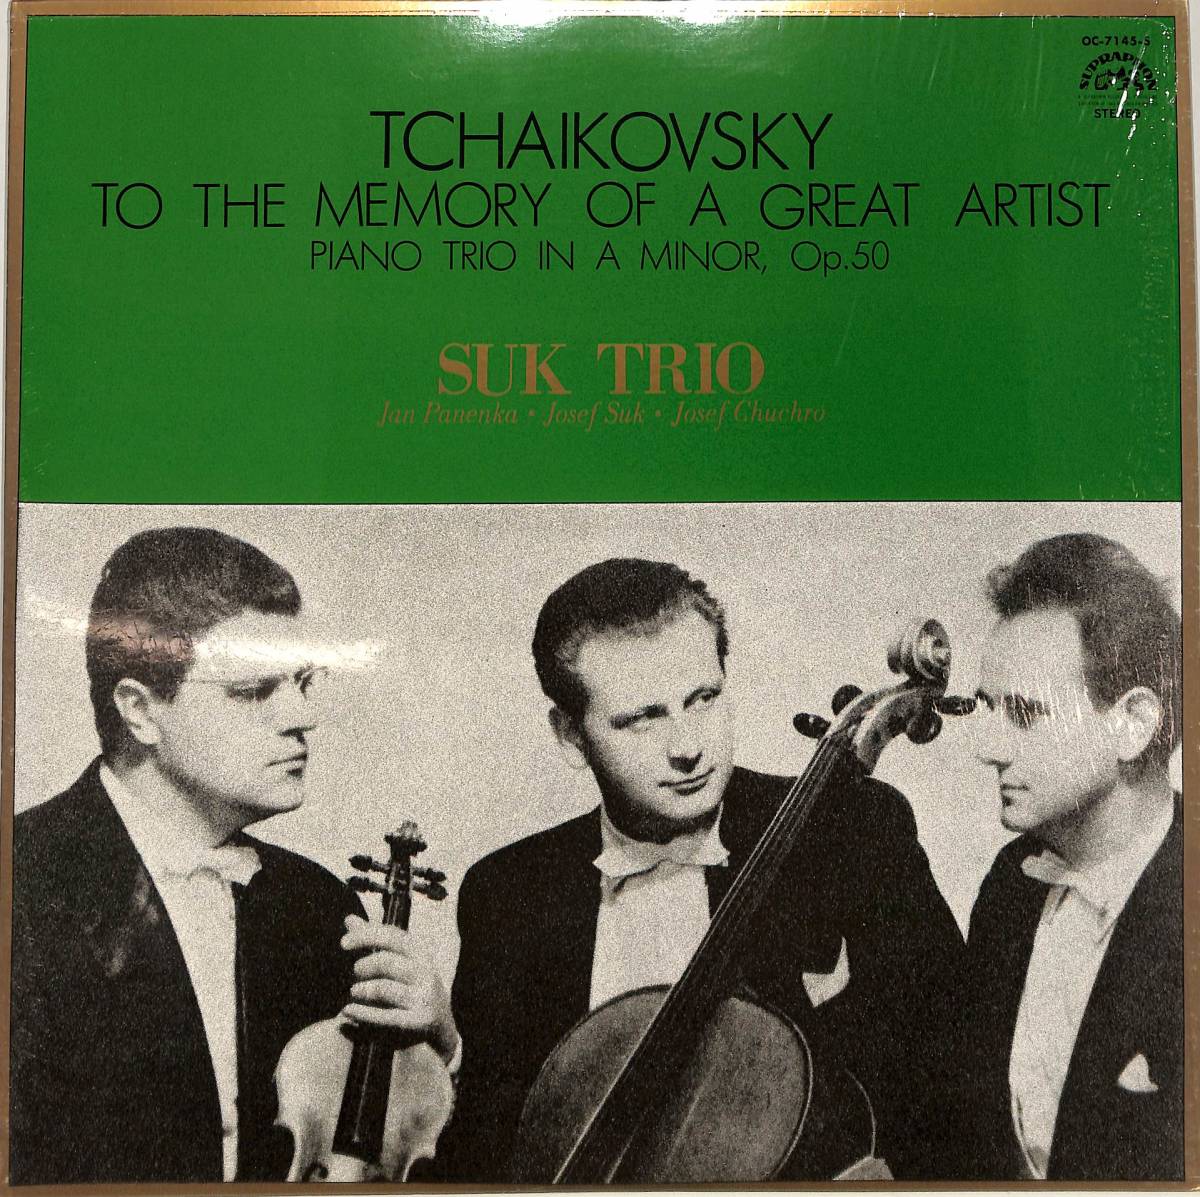 A00527202/LP/スーク・トリオ「チャイコフスキー/ピアノ三重奏曲イ短調ある偉大な芸術家の思い出のために作品50」_画像1